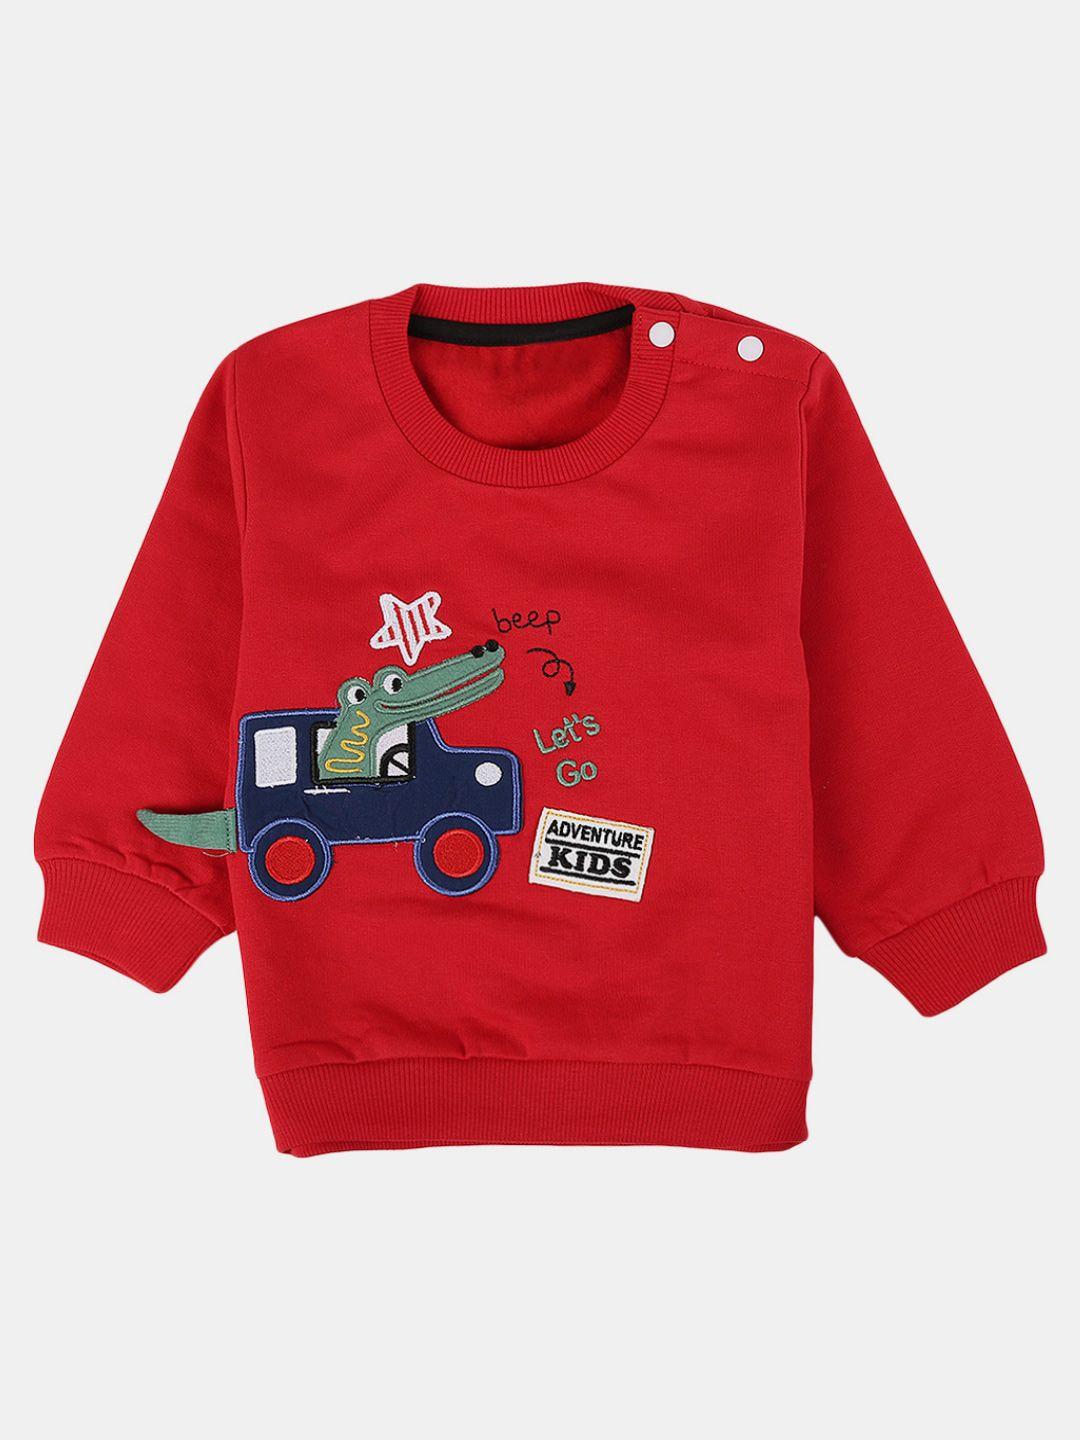 v-mart-unisex-kids-embroidered-fleece-sweatshirt